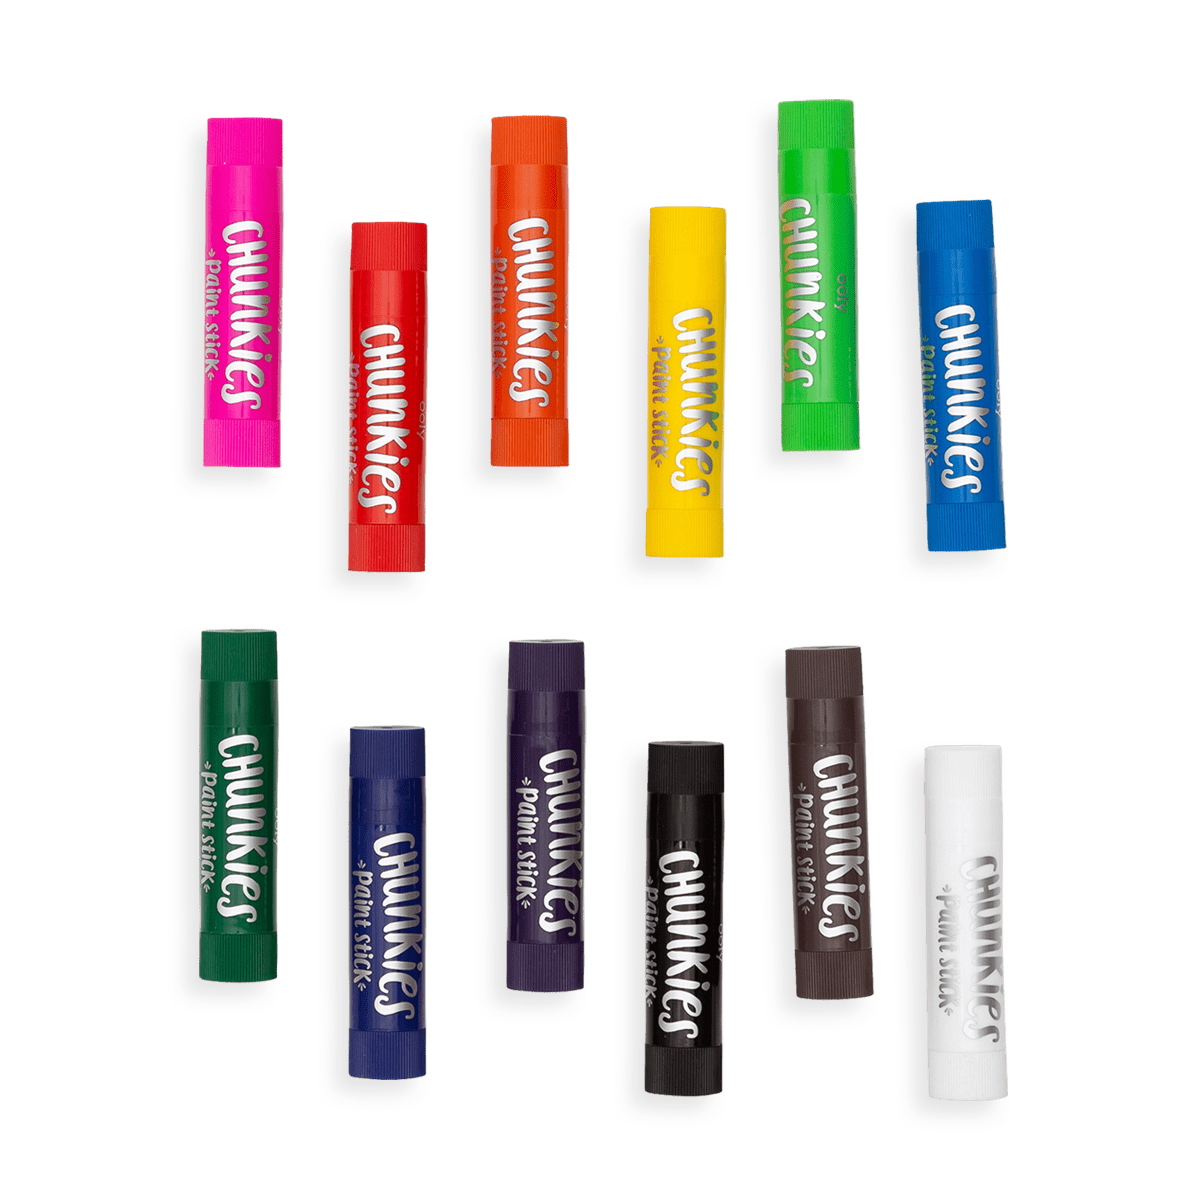 Chunkies Paint Sticks Variety Pack - Karma Kiss